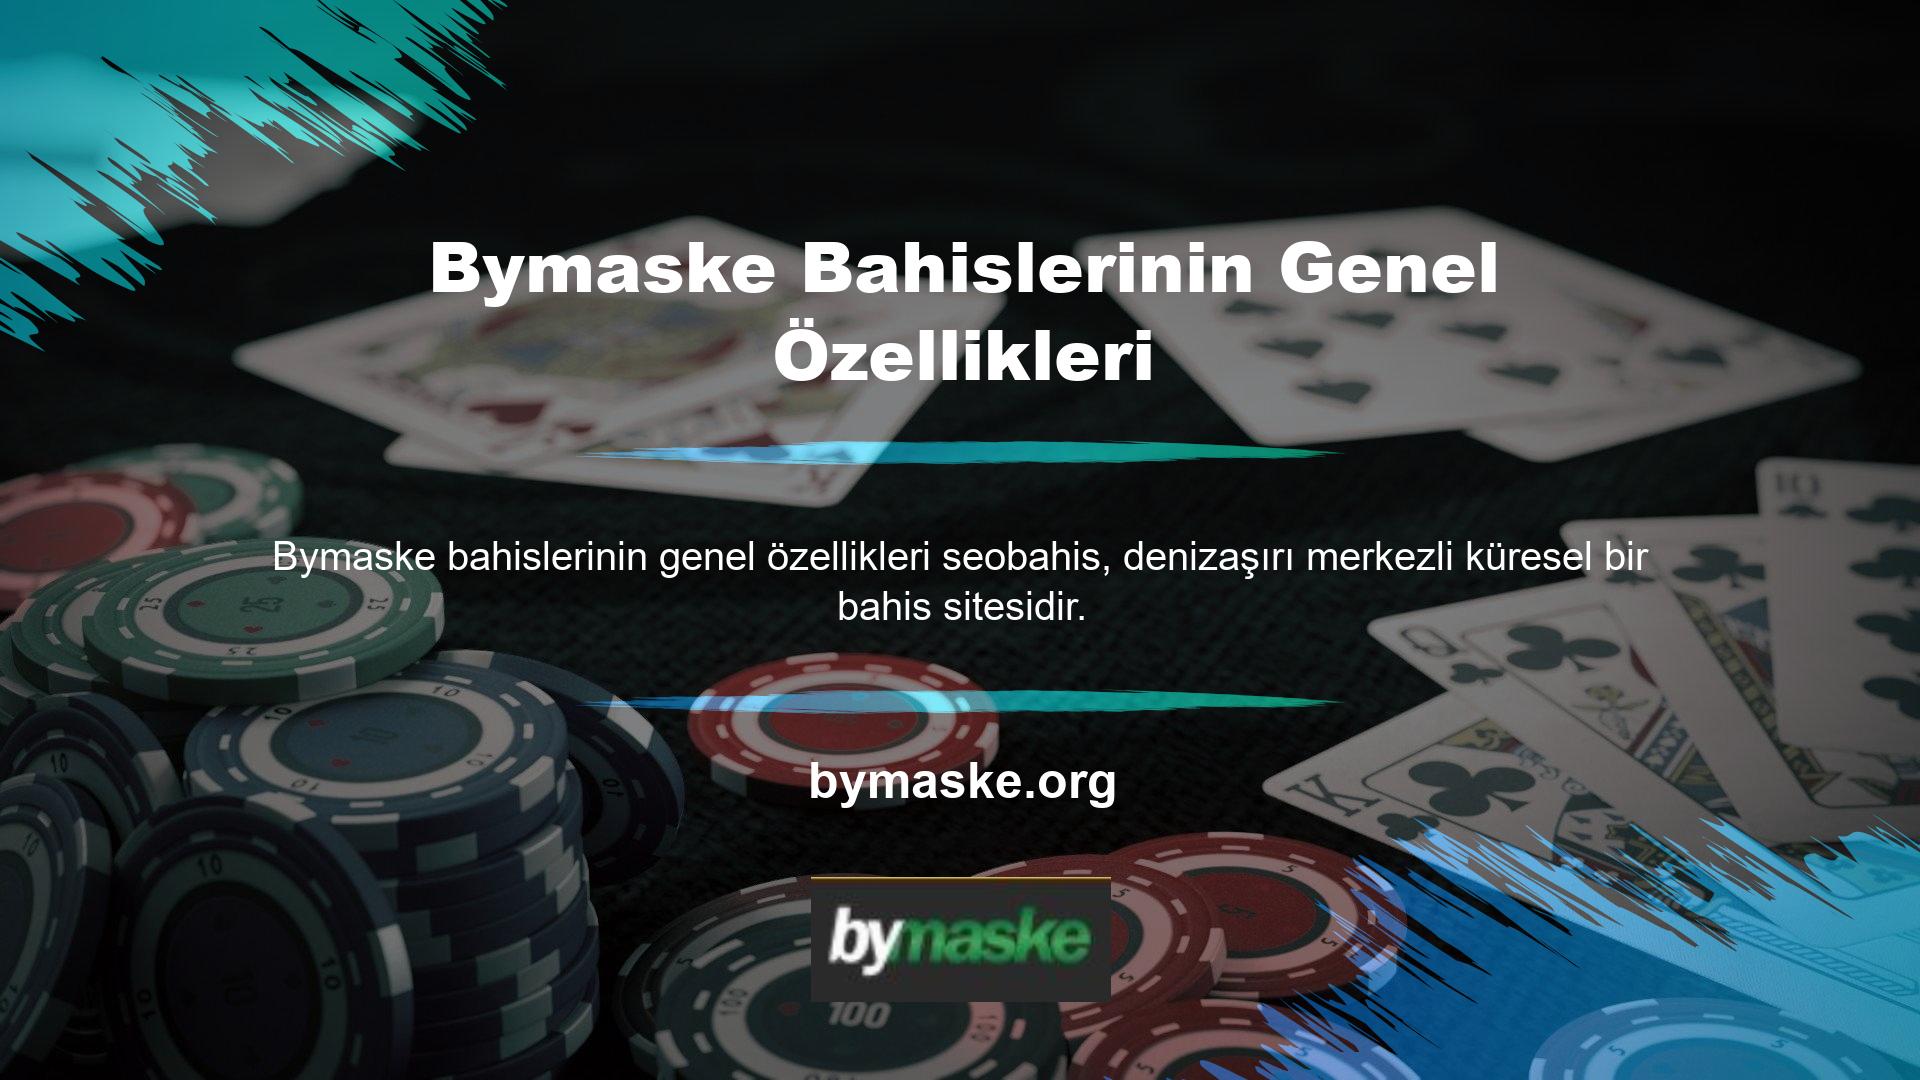 Müşteri memnuniyeti ve hedeflenen gelir ilkelerinden yola çıkan Bymaske, kullanıcı merkezli bir web sitesi ortamı oluşturmuştur